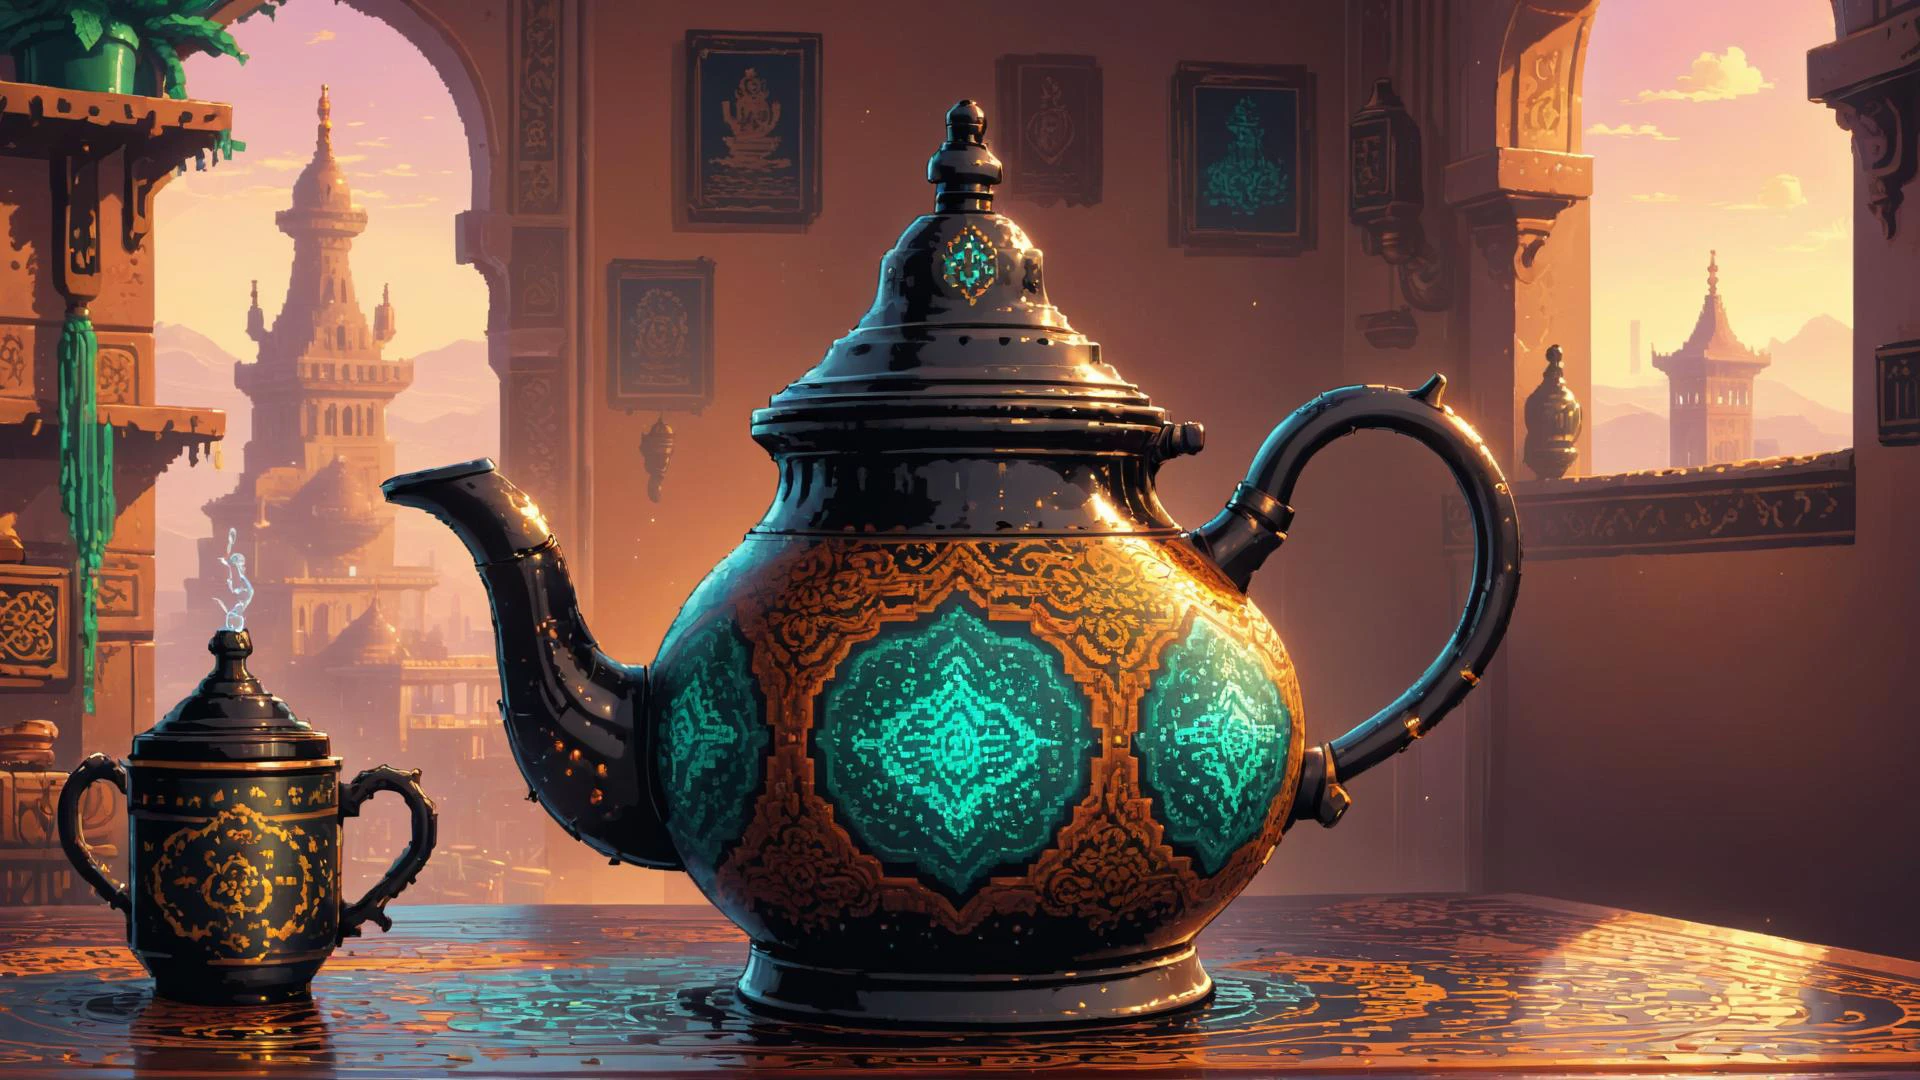 像素艺术, 基于物理的渲染, 茶壶,  由 Levi&#39;s 制造, 魔幻现实主义, 蒸汽朋克, 哦 